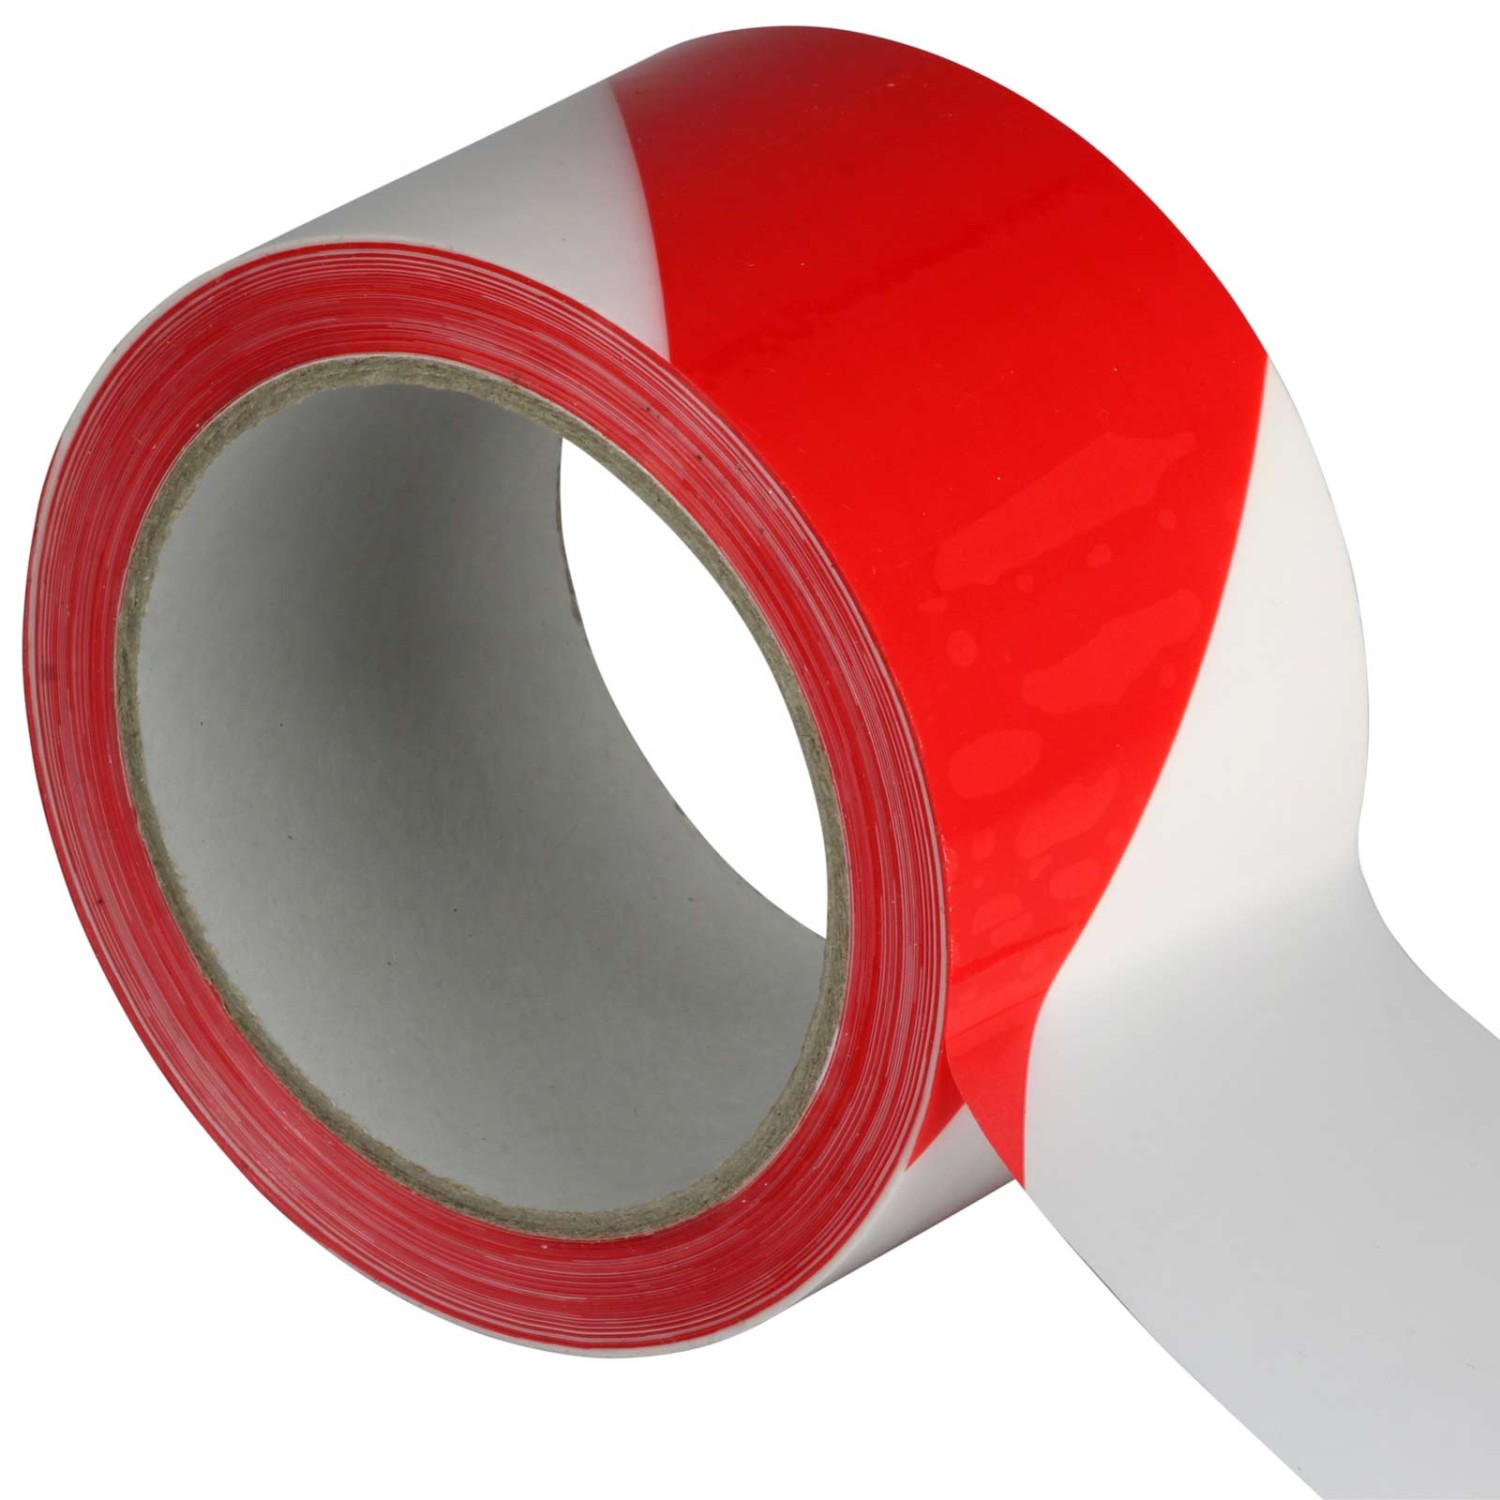 Absperr- Klebeband Warnband für Gefahrenbereiche 50 mm x 66 m rot weiß (Richtung der Markierung: rechts weisend)